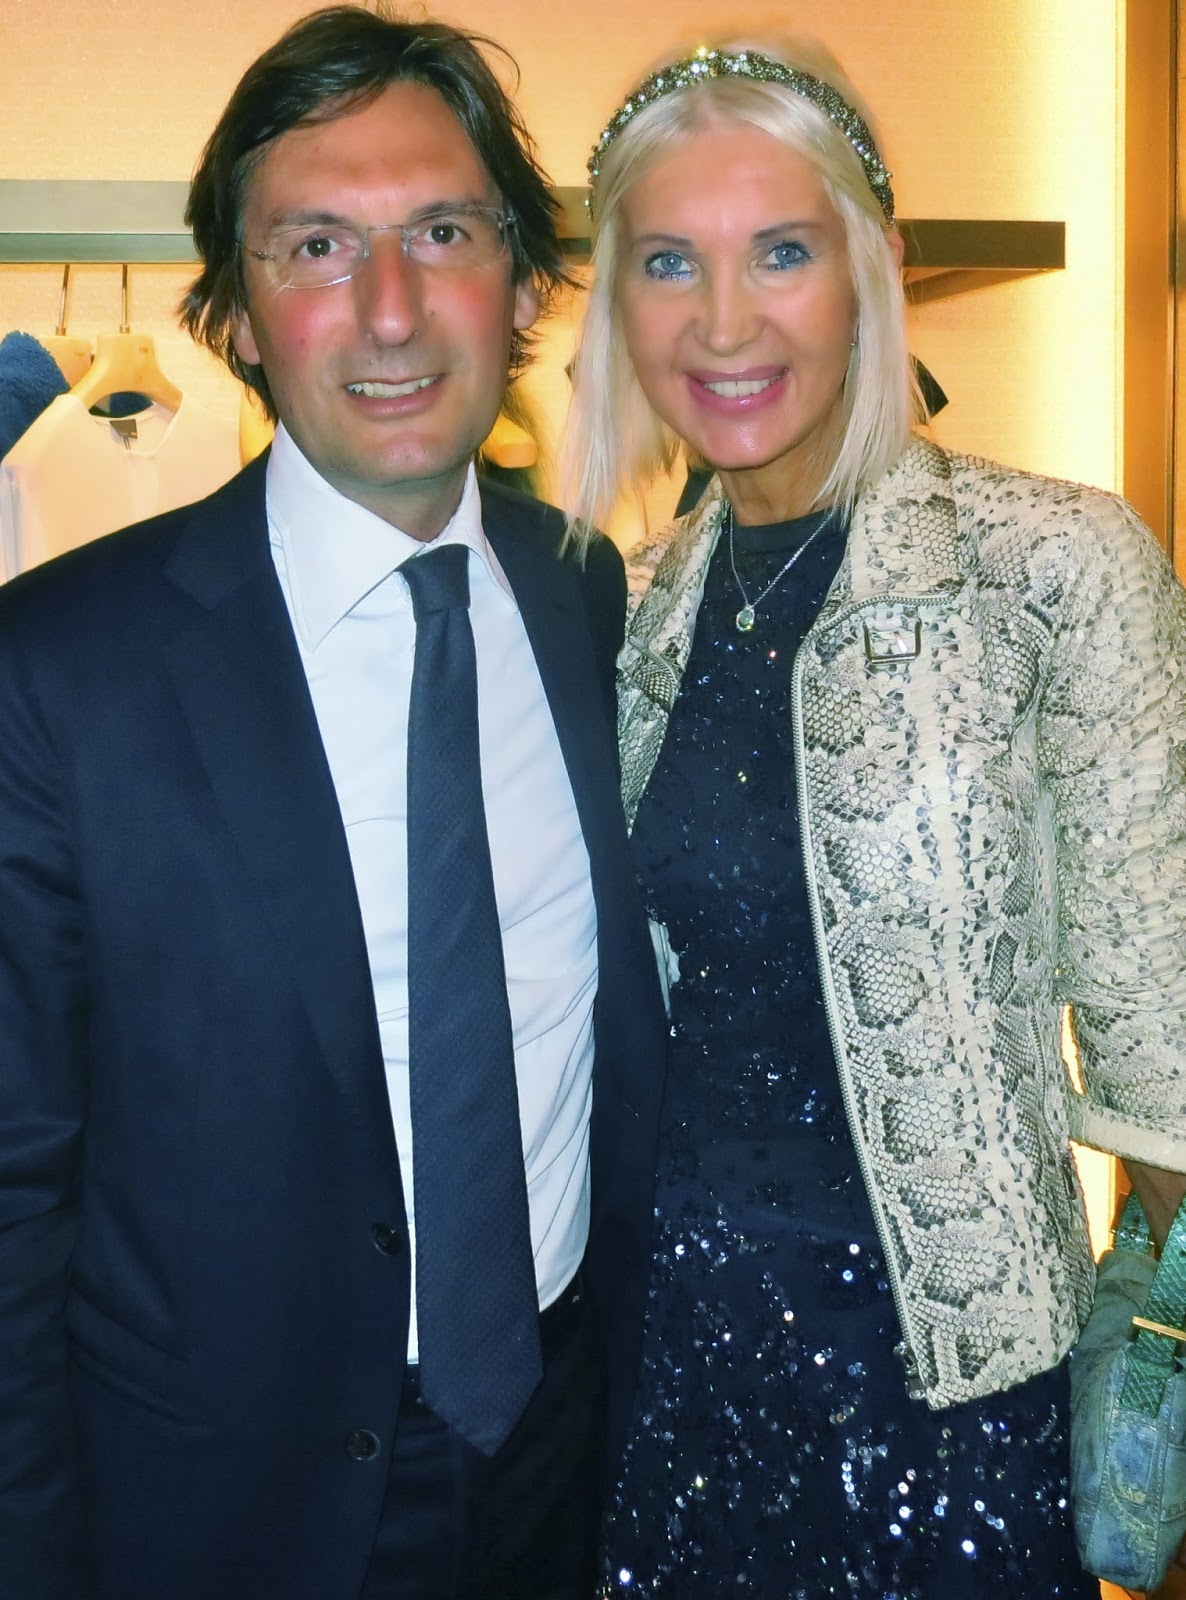 Elisabetta Beccari and Pietro Beccari, FENDI CEO, attend the FENDI